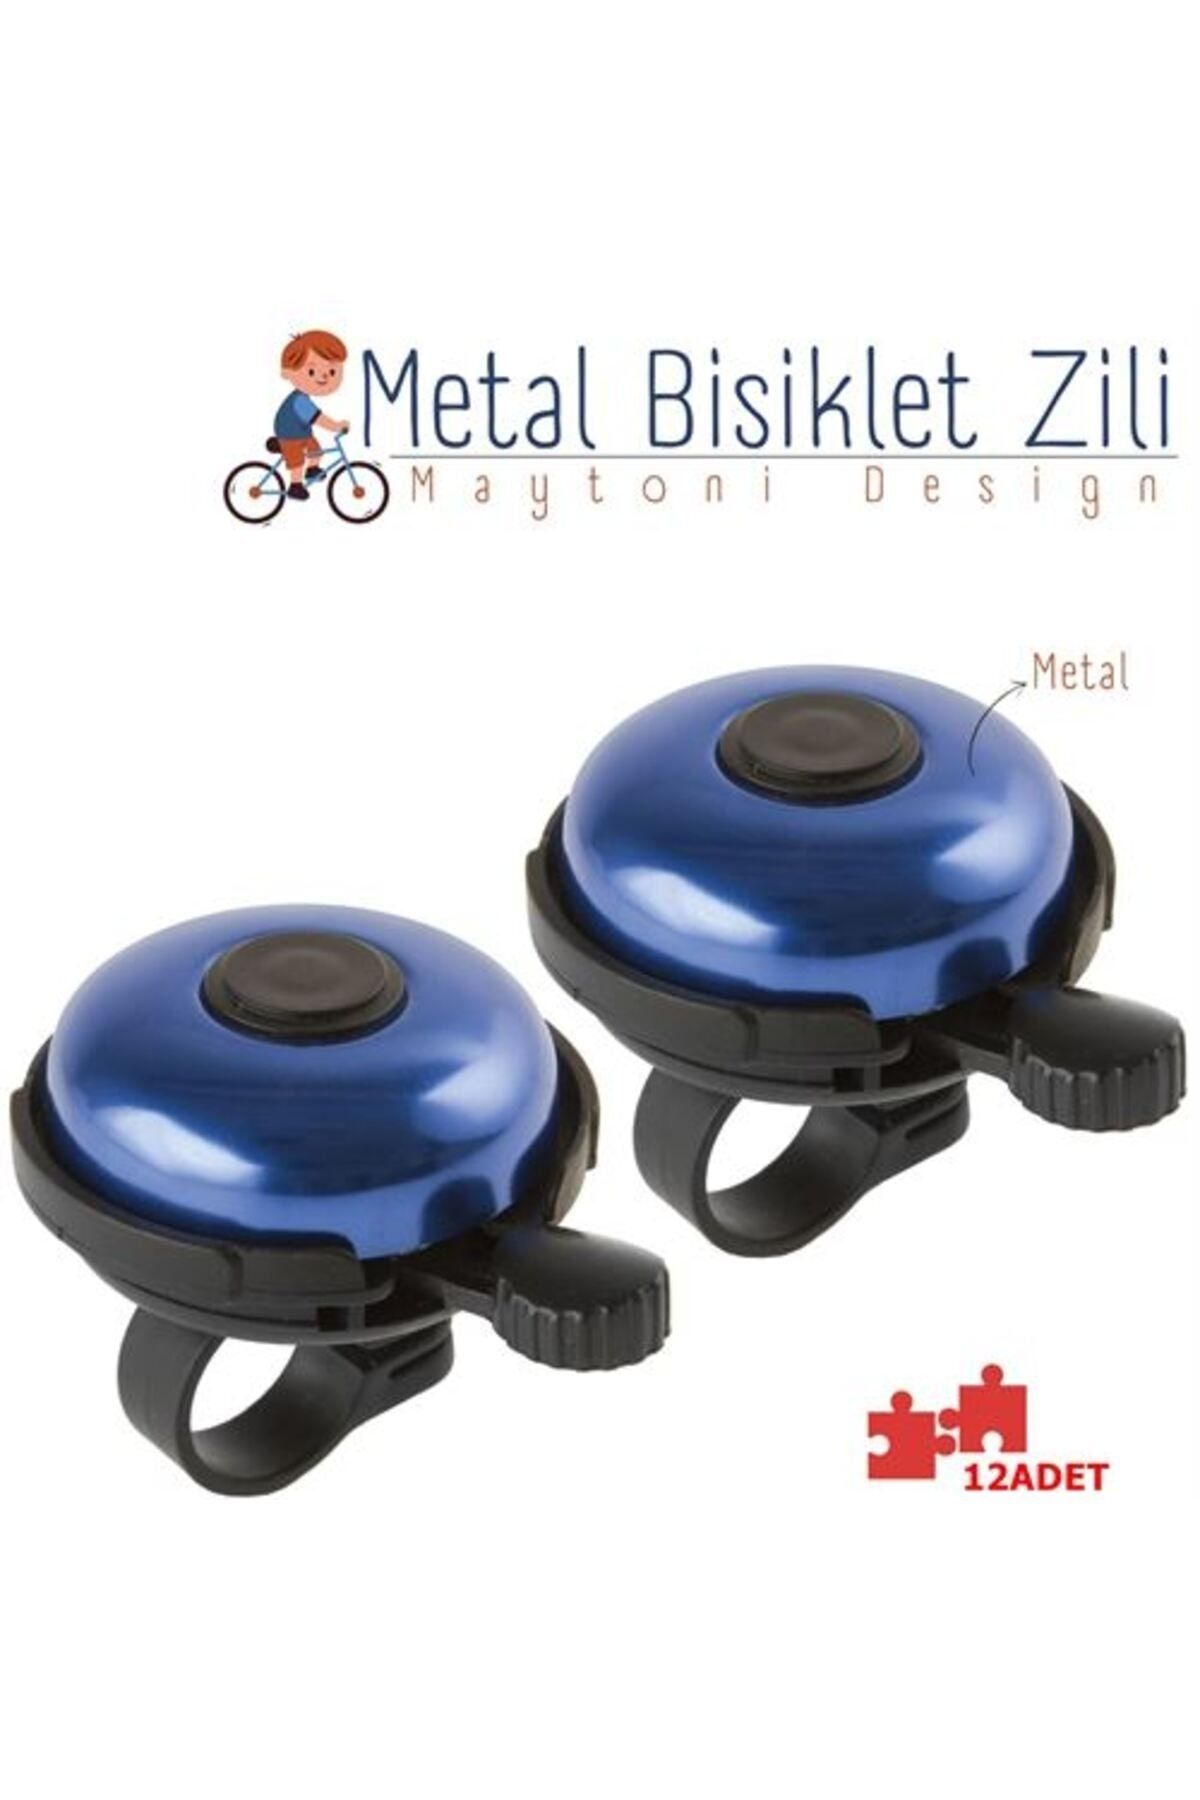 ModaCar Bisiklet Zili 24+4 ADET Metal Maytoni Design 429044